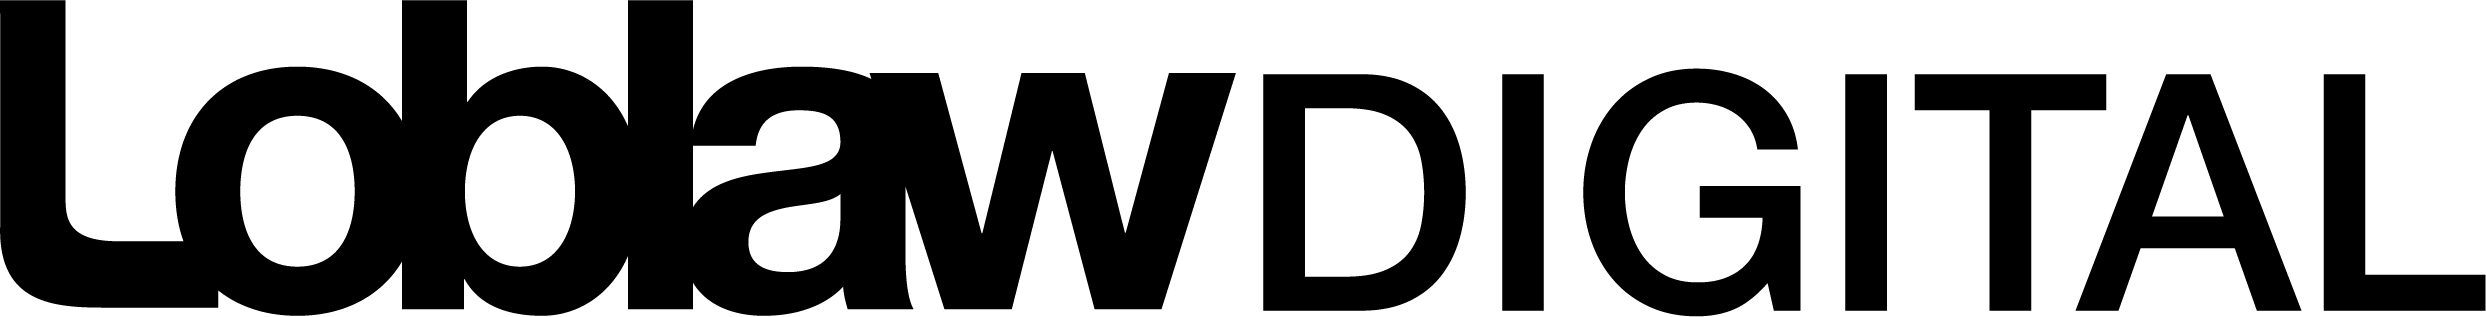 Loblaww Digital-logo